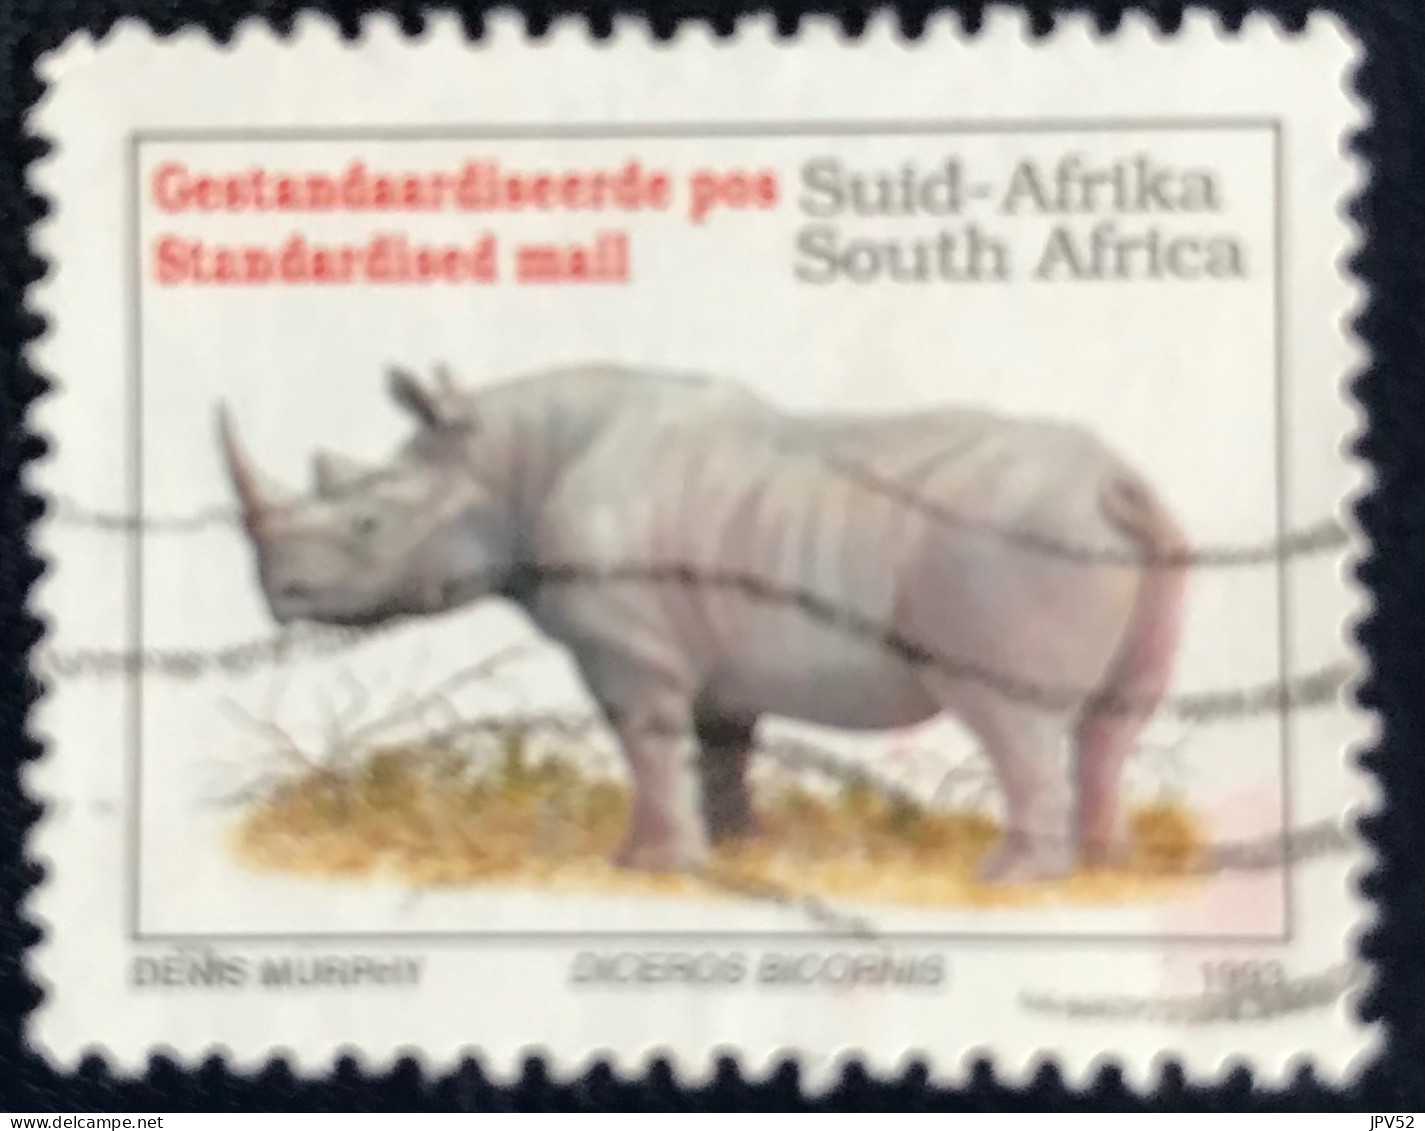 RSA - South Africa - Suid-Afrika  - C18/8 - 1996 - (°)used - Michel 896 - Bedreigde Dieren - Usati